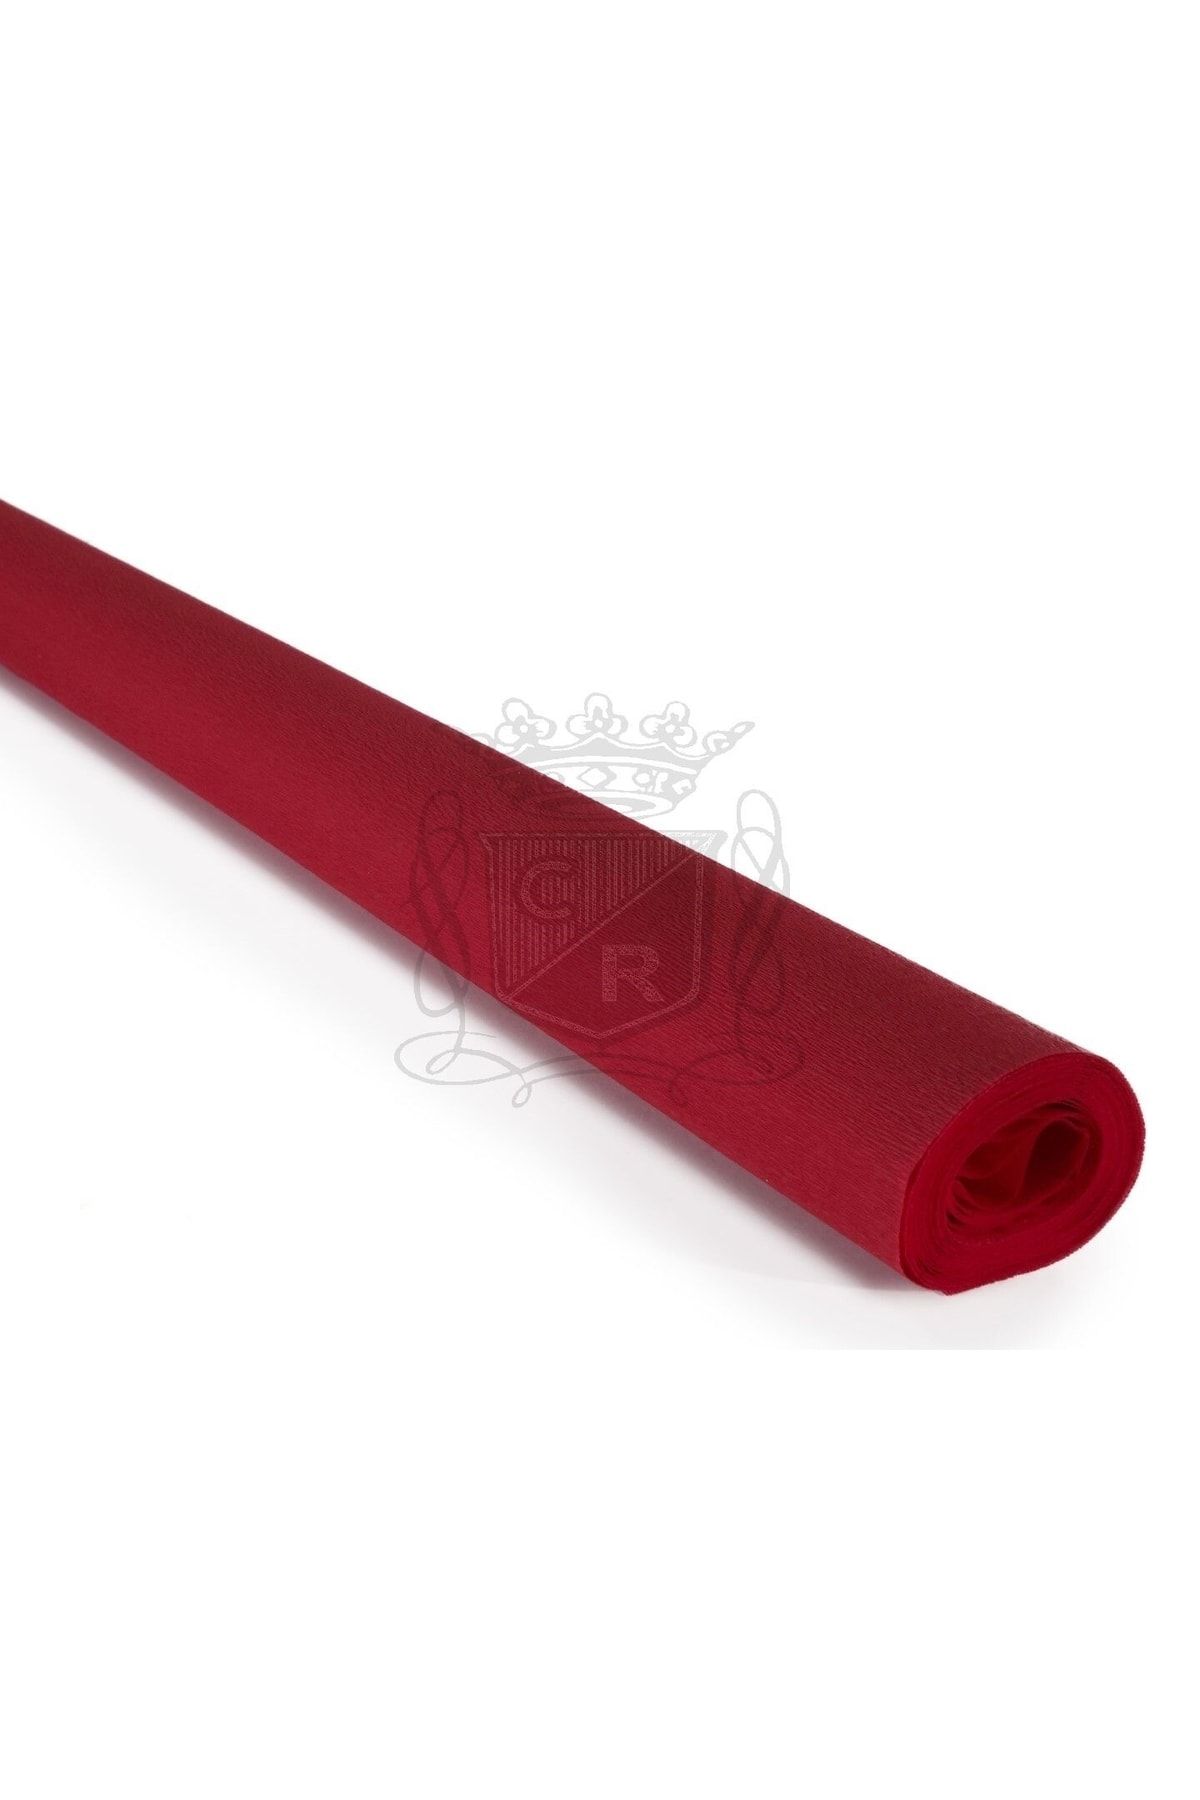 roco paper Italyan Krapon Kağıdı No:312 - Bayrak Kırmızı - Vivo Red 60 Gr. 50x250 Cm